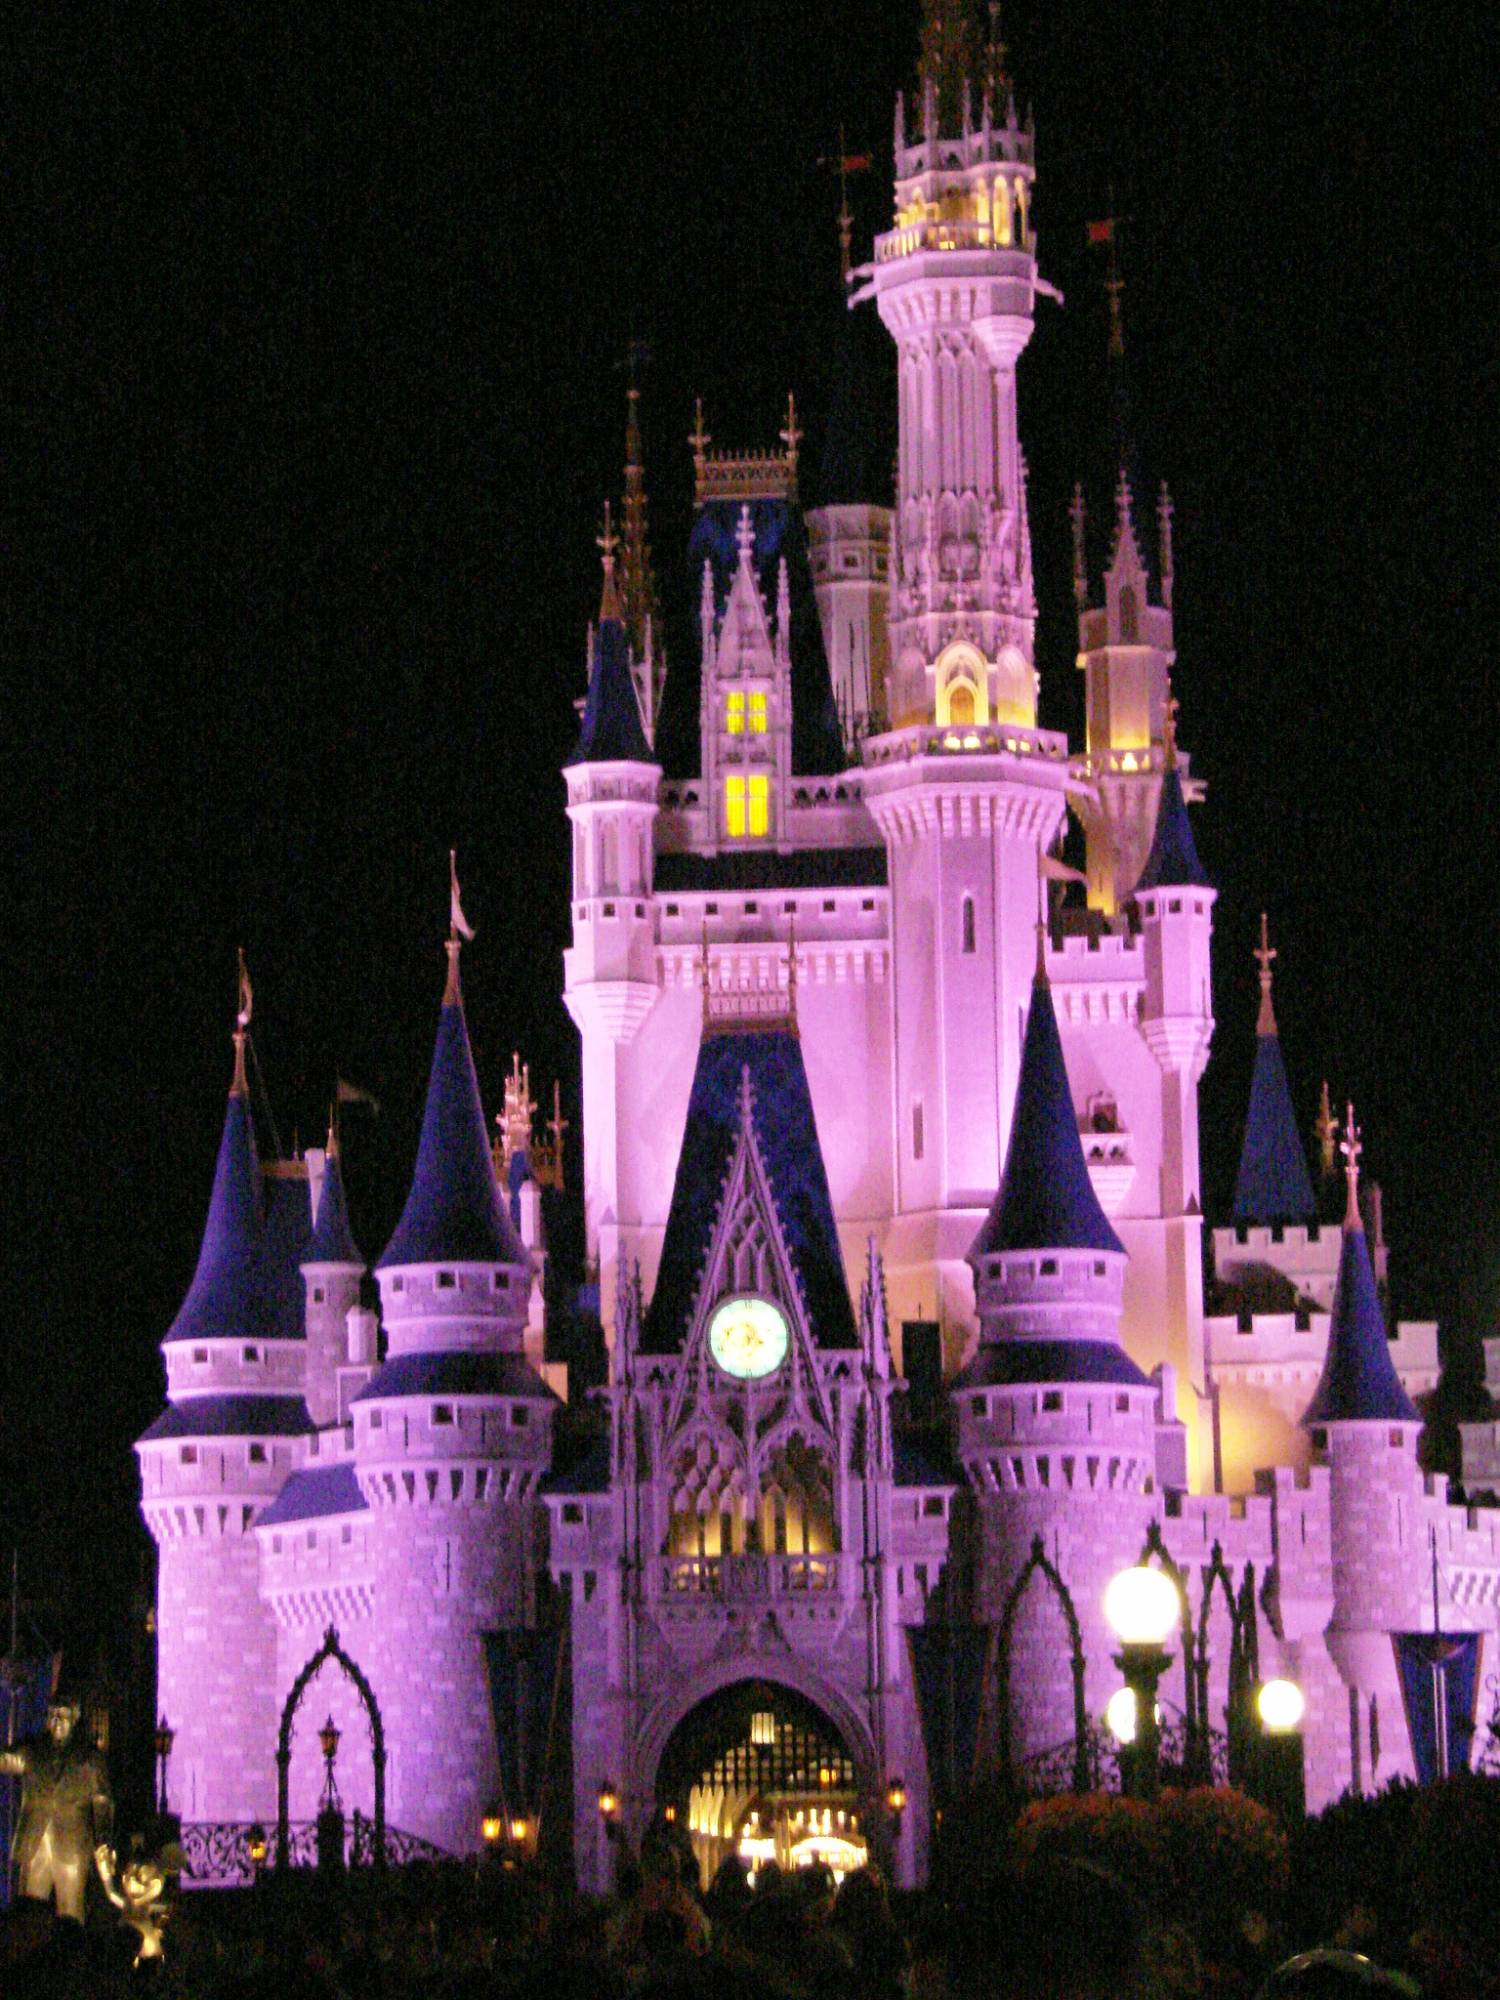 Magic Kingdom - Fantasyland - Cinderella's Castle